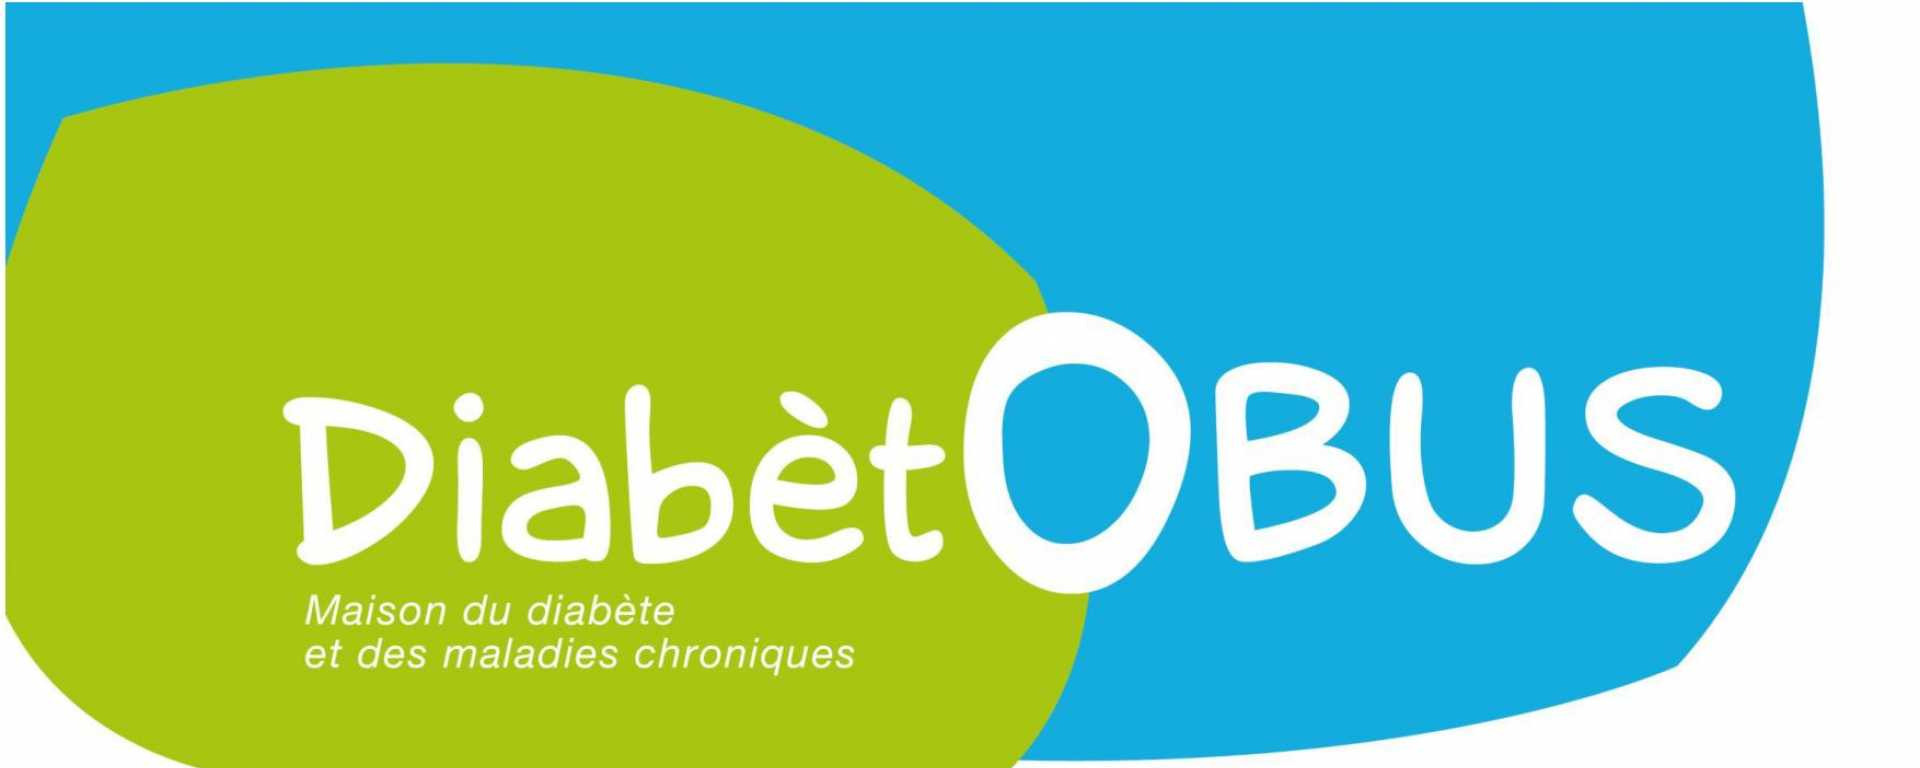 Diabetobus